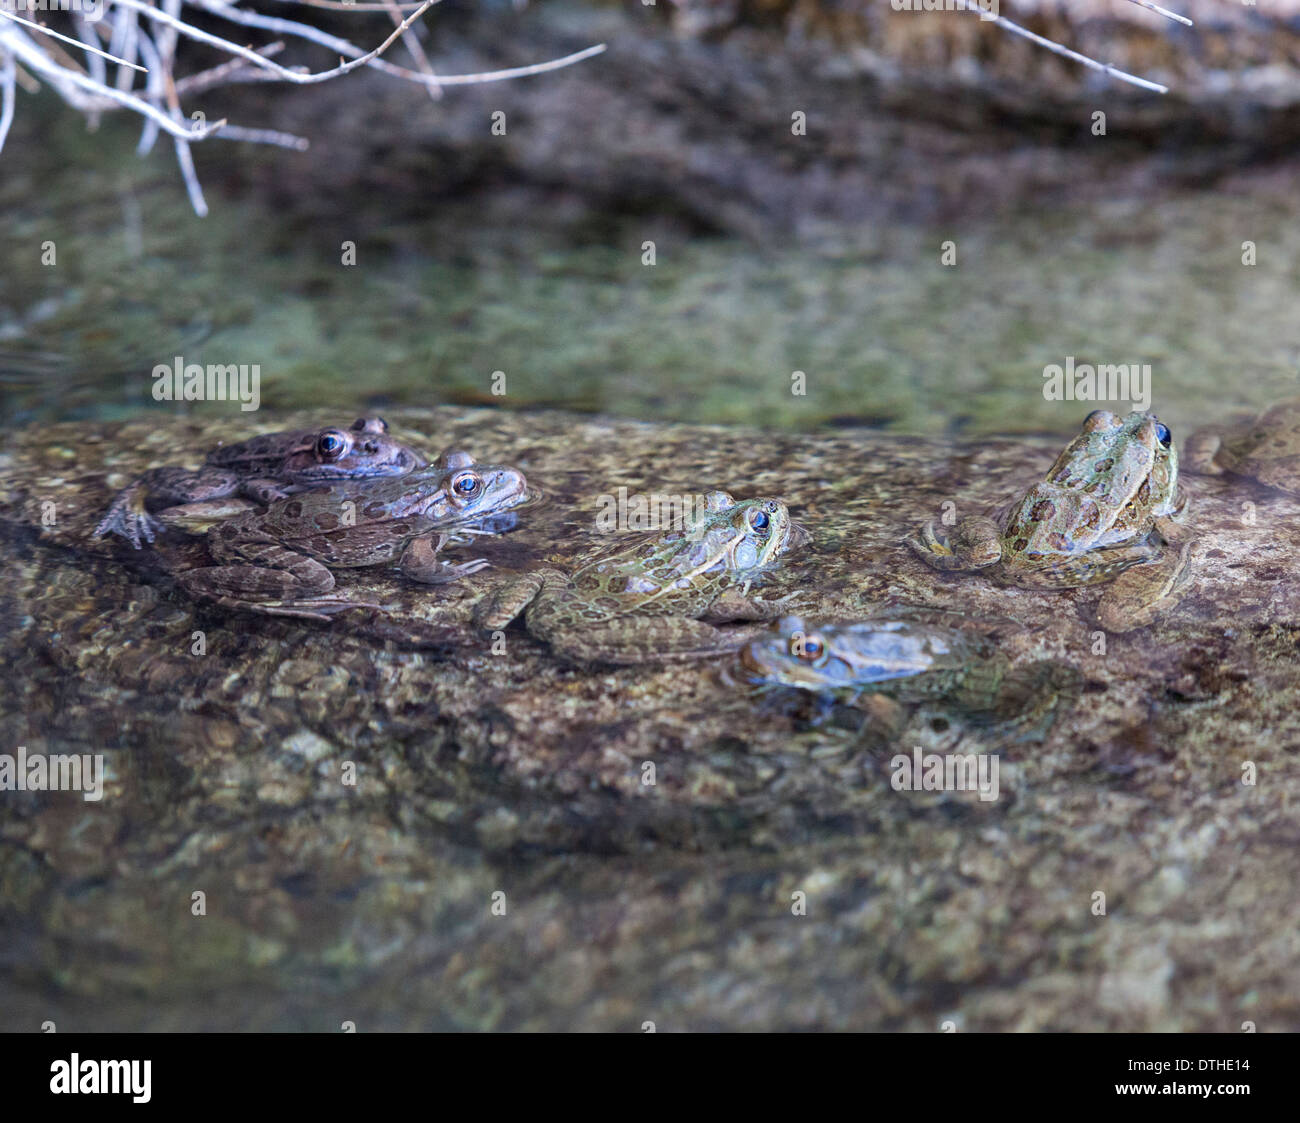 Un leopardo de ranas en una corriente superficial en Arizona, EE.UU. Foto de stock